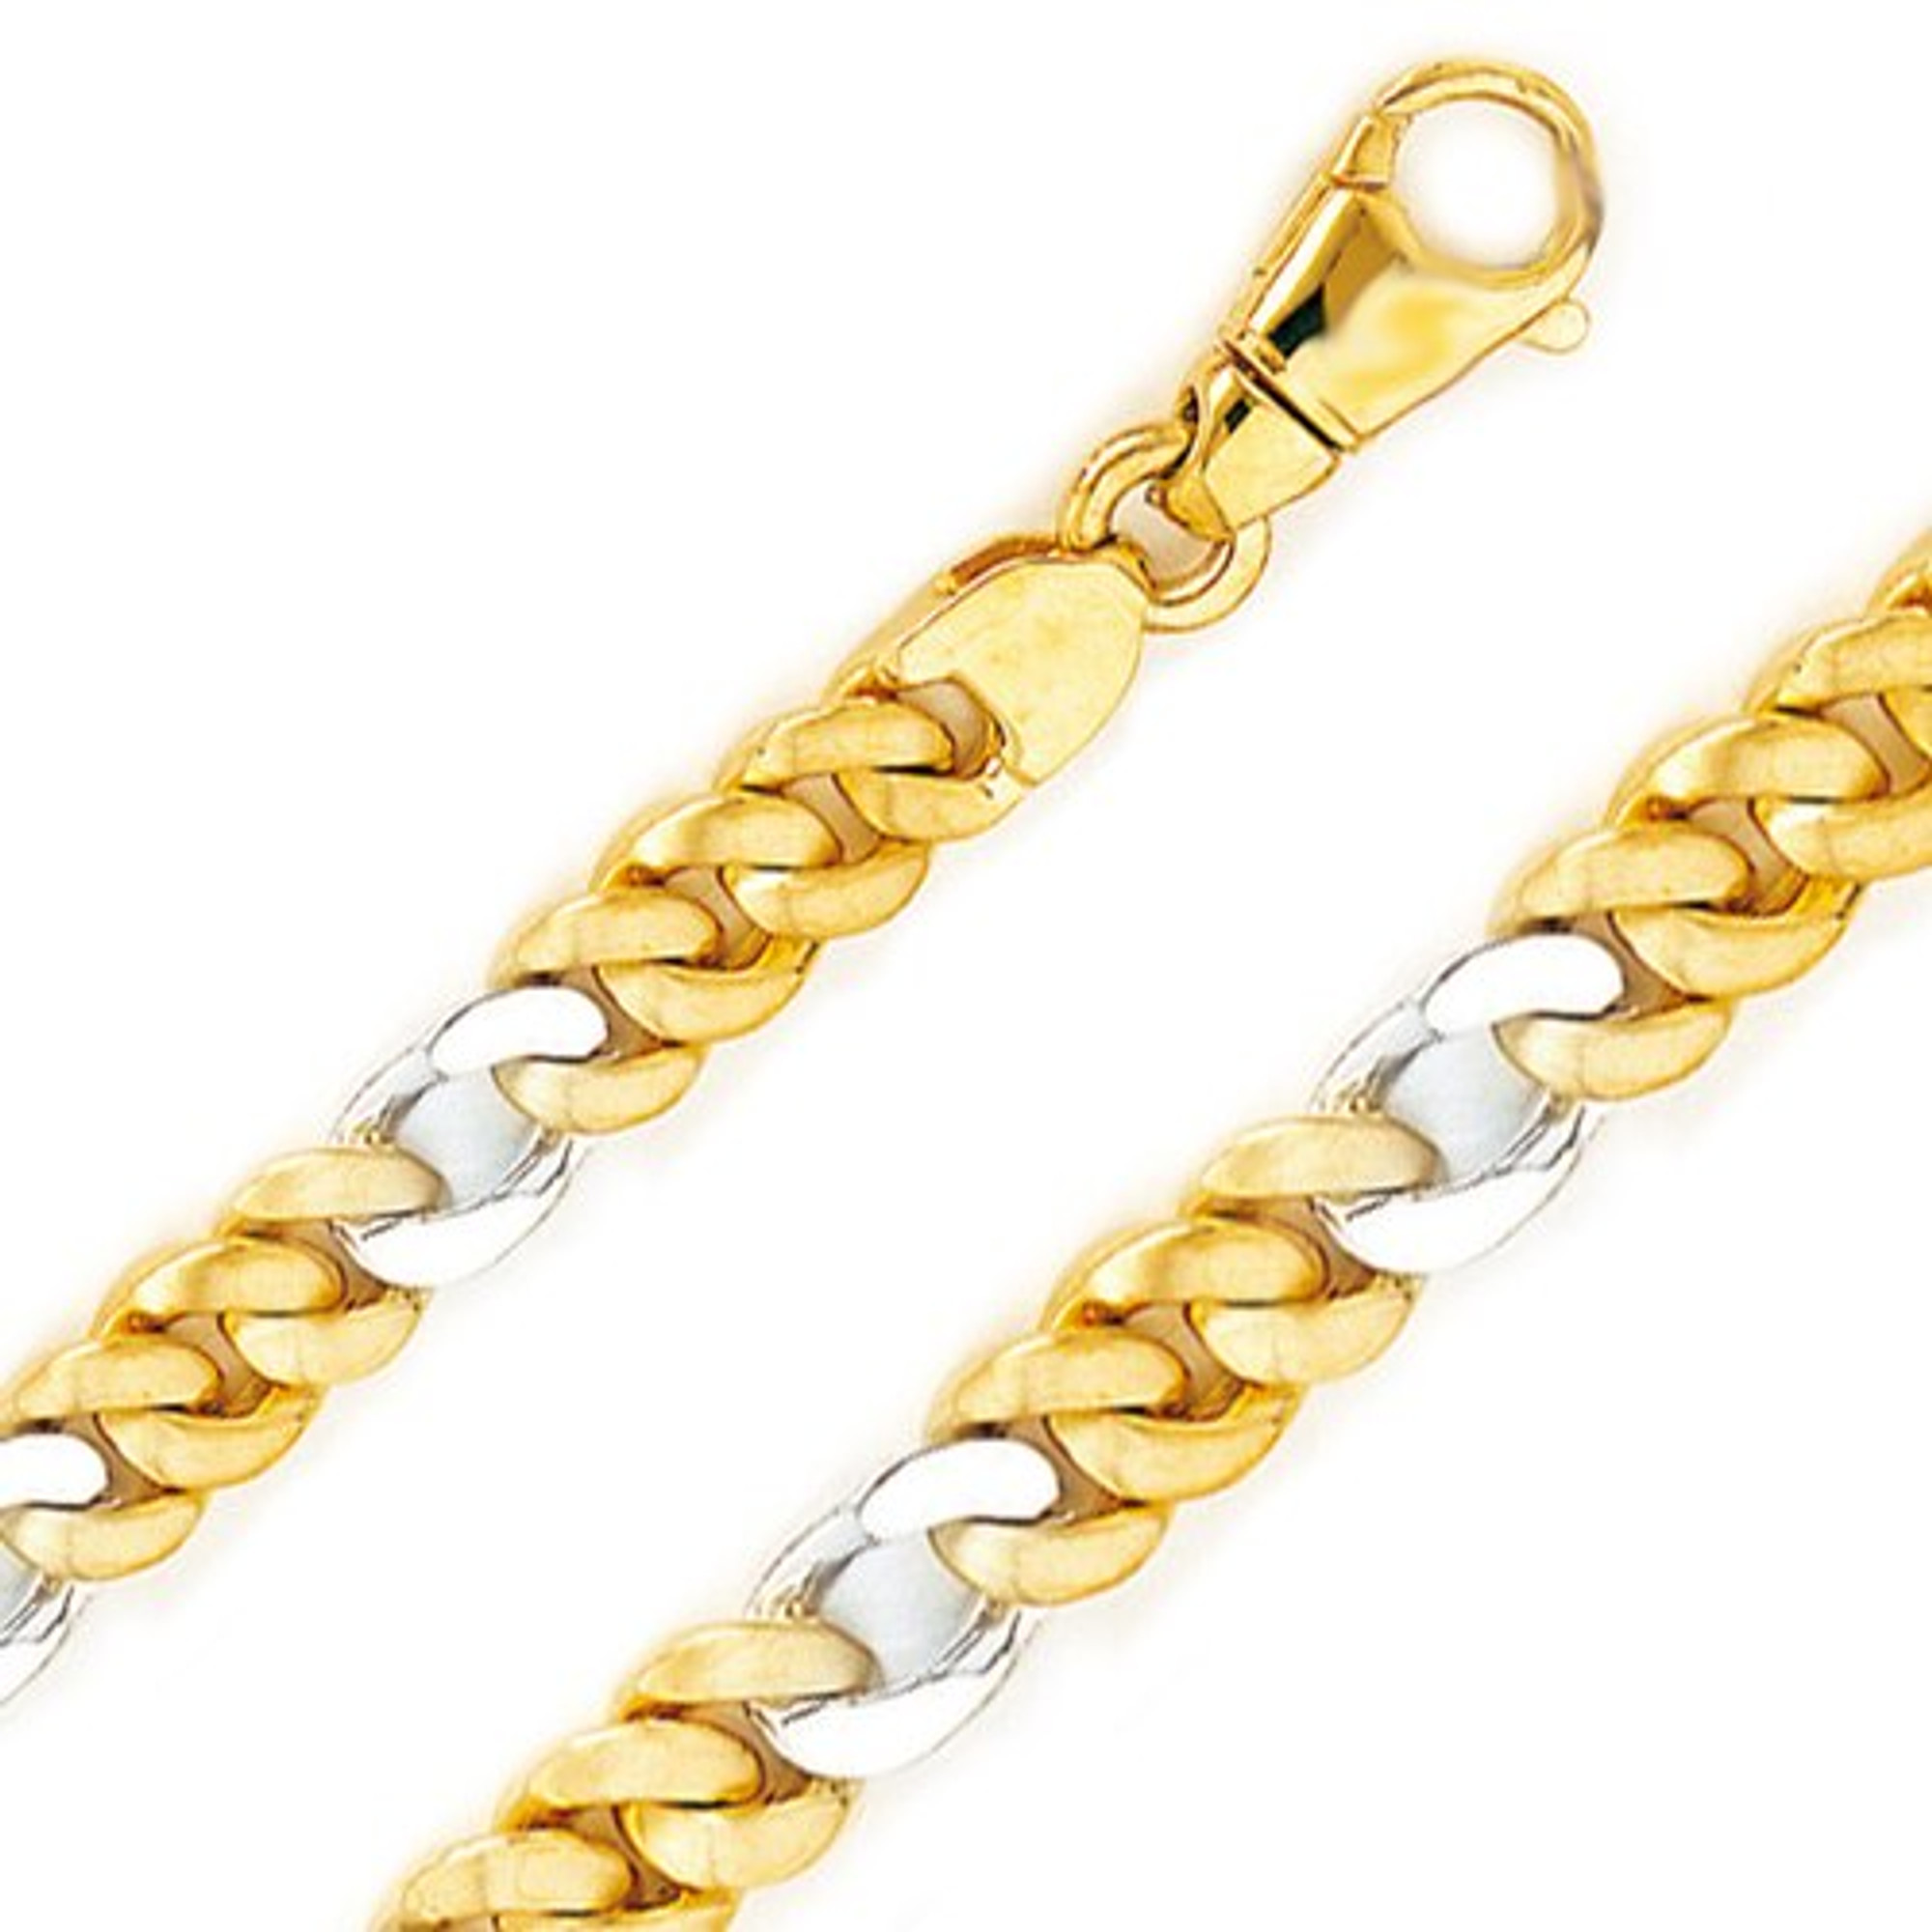 4mm Gold Bead Bracelet - Zoe Lev Jewelry